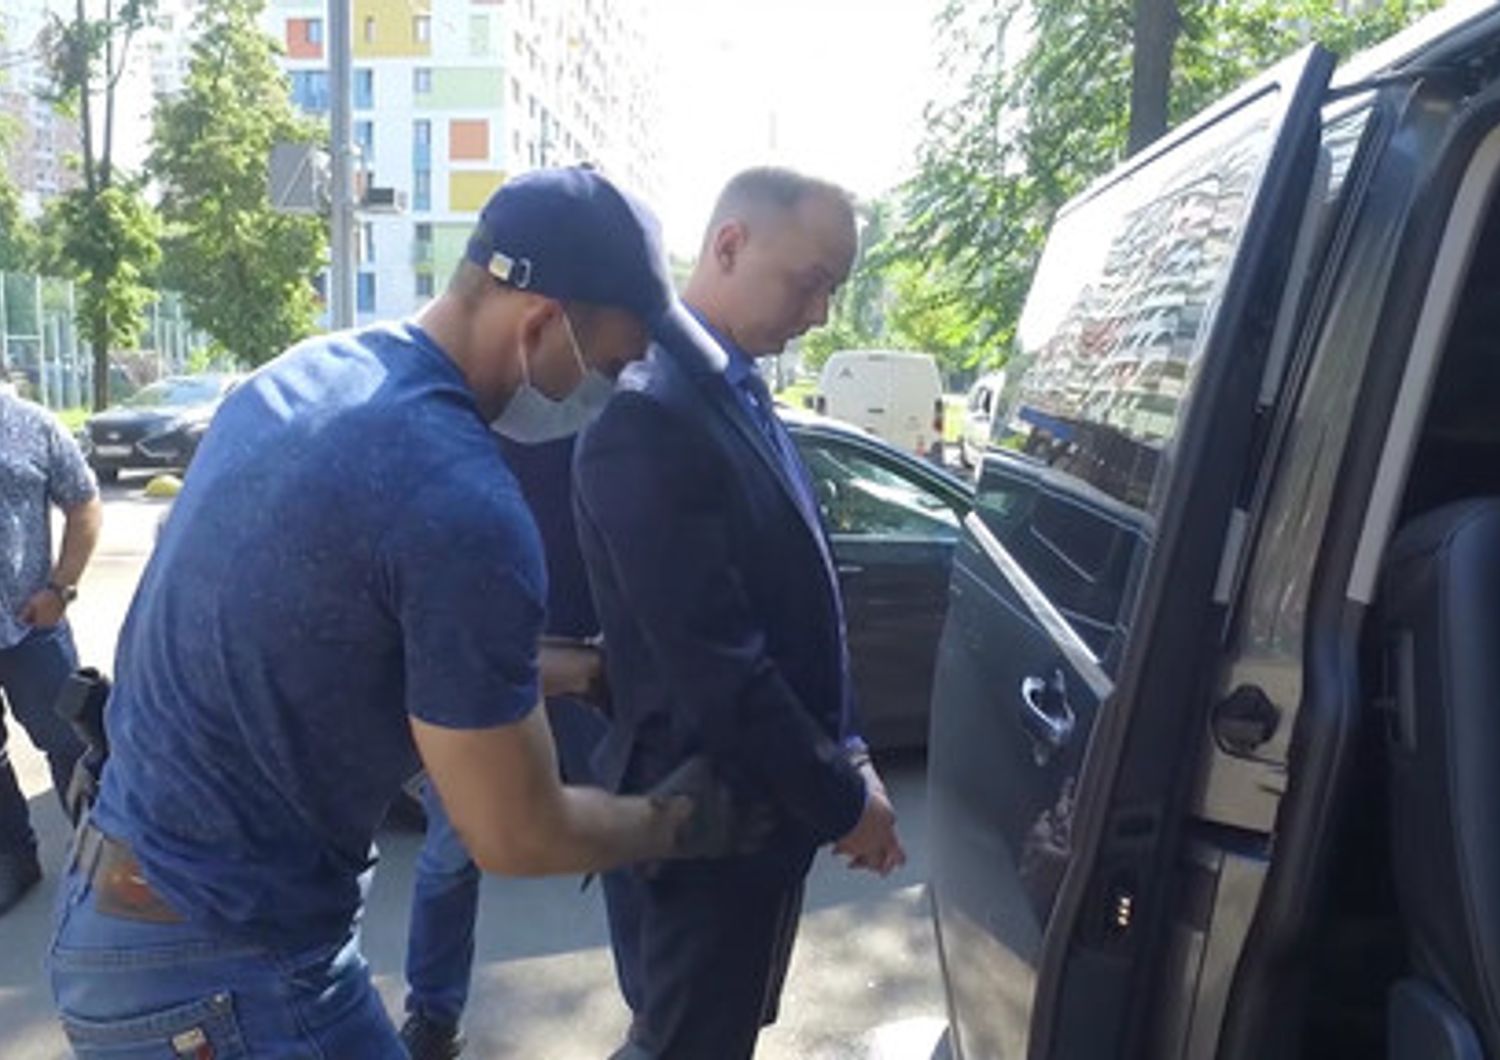 Il momento dell'arresto di Ivan Safronov a Mosca